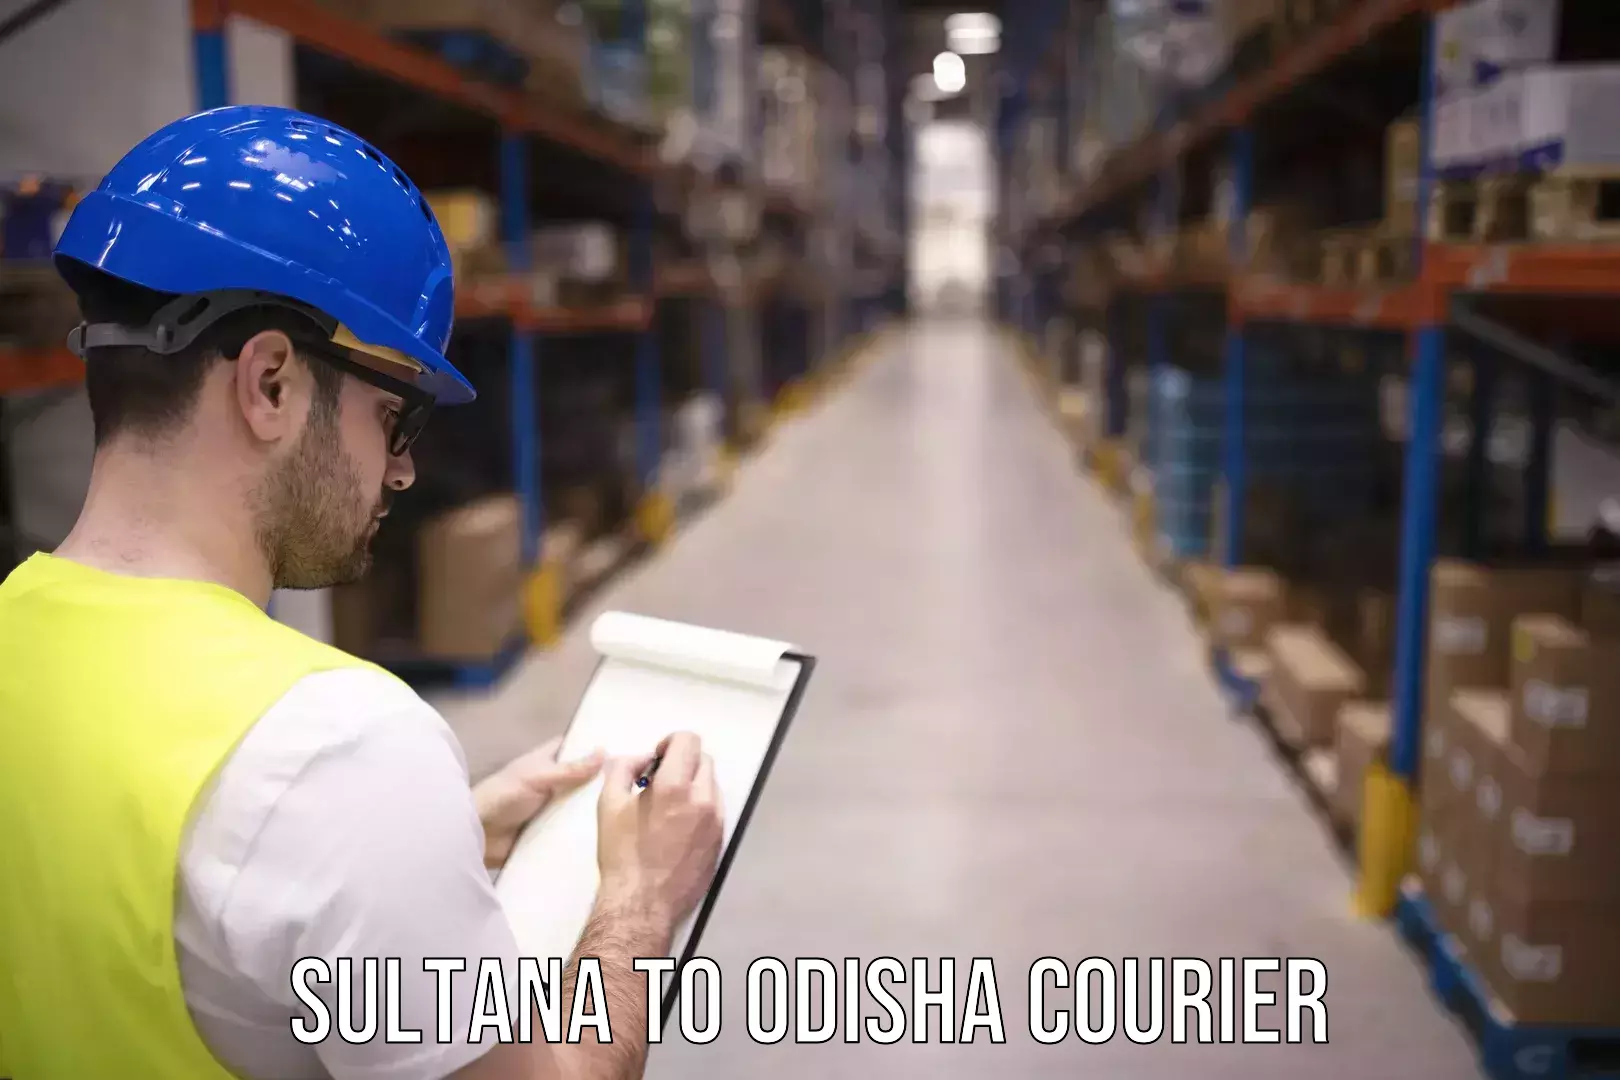 Premium courier solutions in Sultana to Dukura